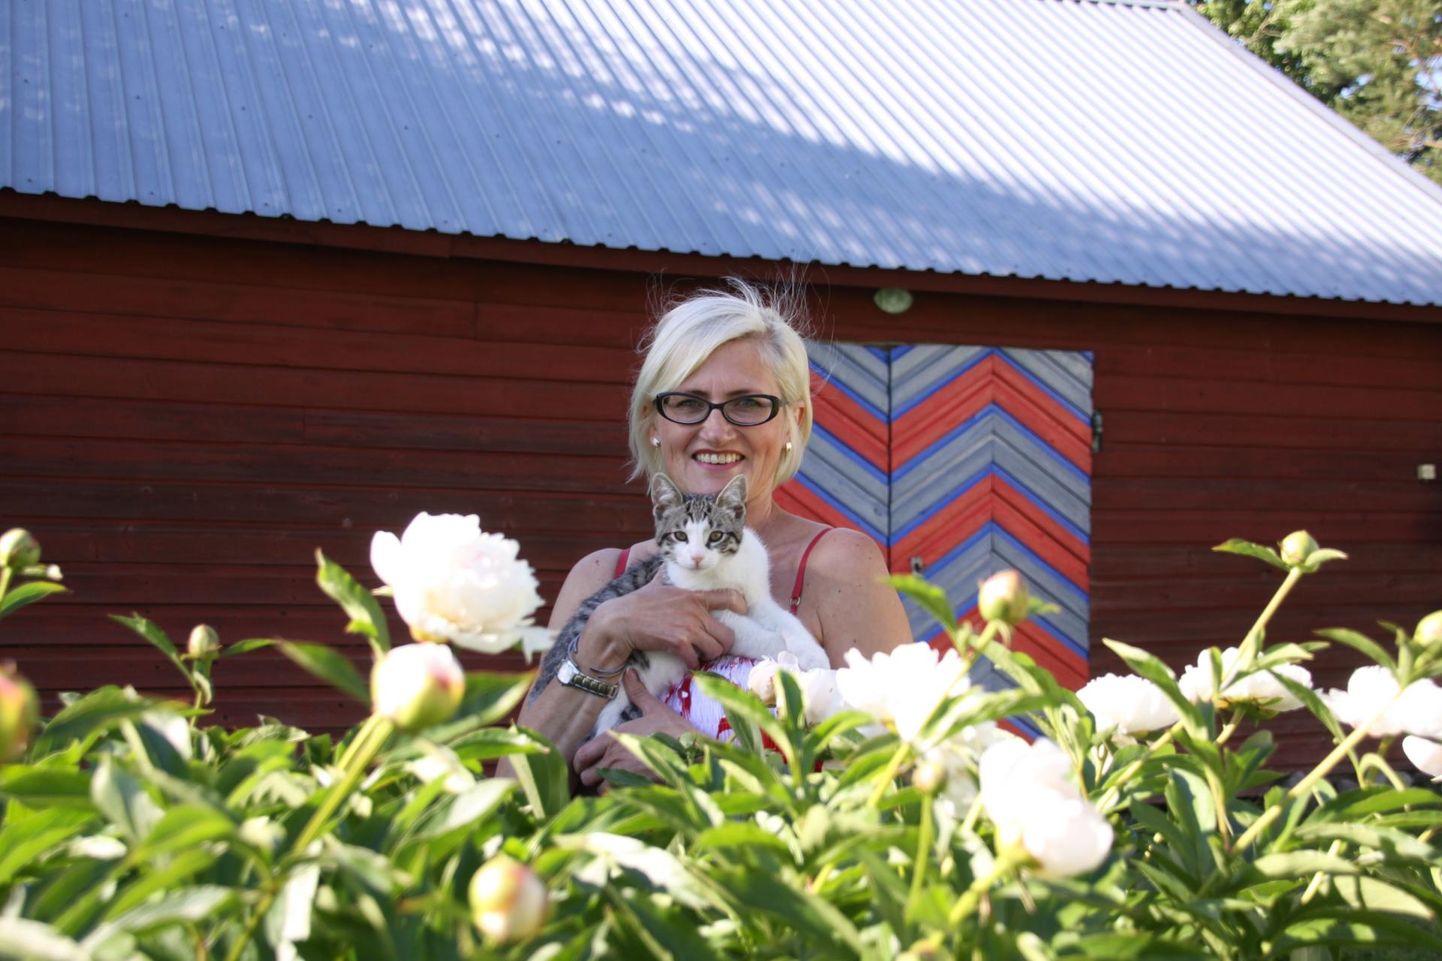 Uue-Kulli talu perenaine Annela Ojaste koondas pildile oma lemmikud: kass Oskari, põlvest põlve hoitud pojengipõõsa ja kevadel Paide kihelkonna värvidesse võõbatud ukse.